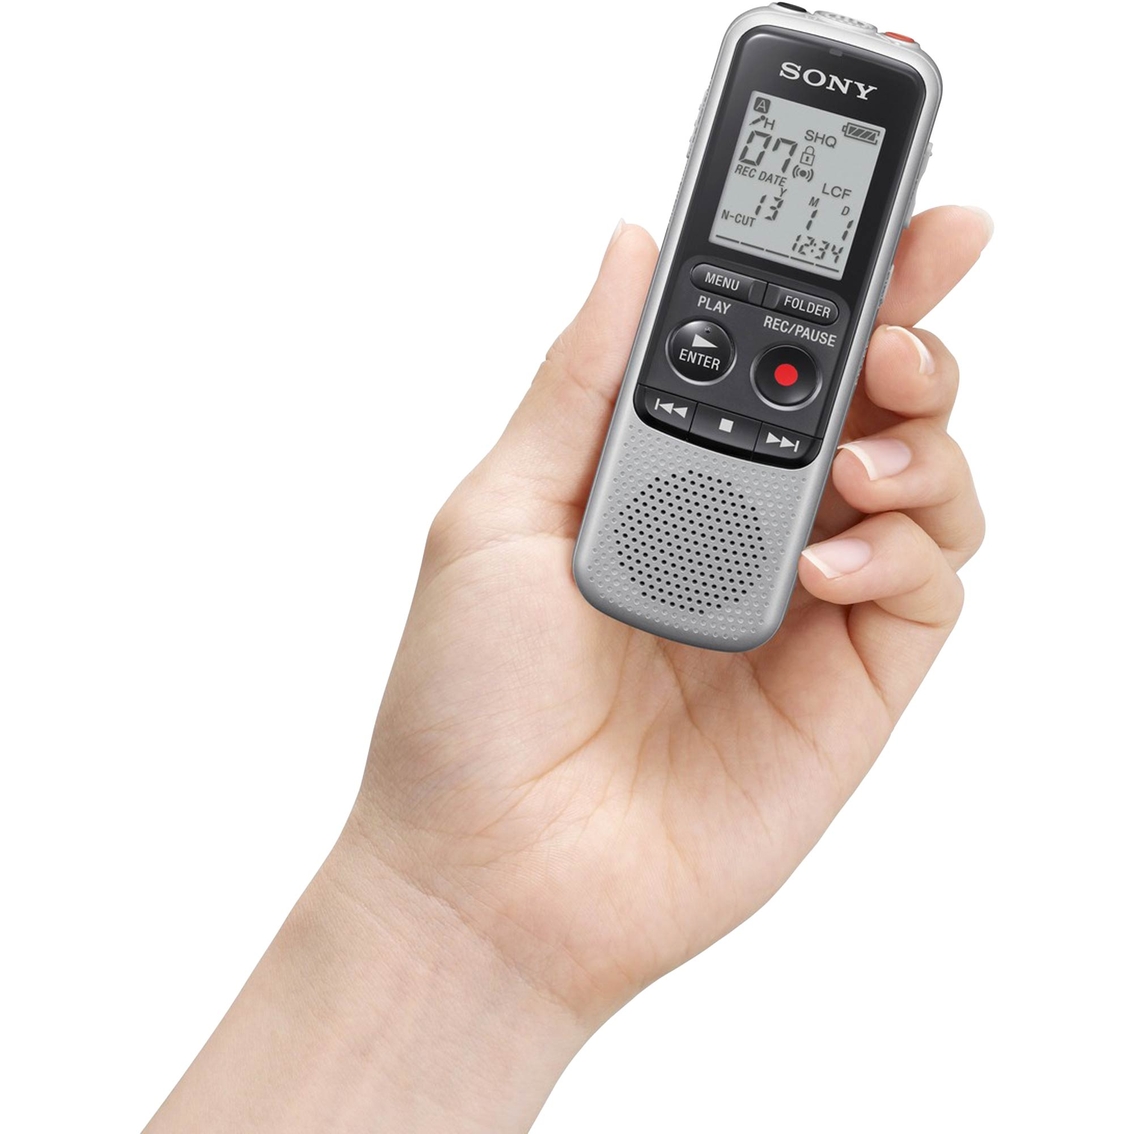 Doornen En bericht Sony Icd-bx140 Digital Voice Recorder | Home Audio | Electronics | Shop The  Exchange